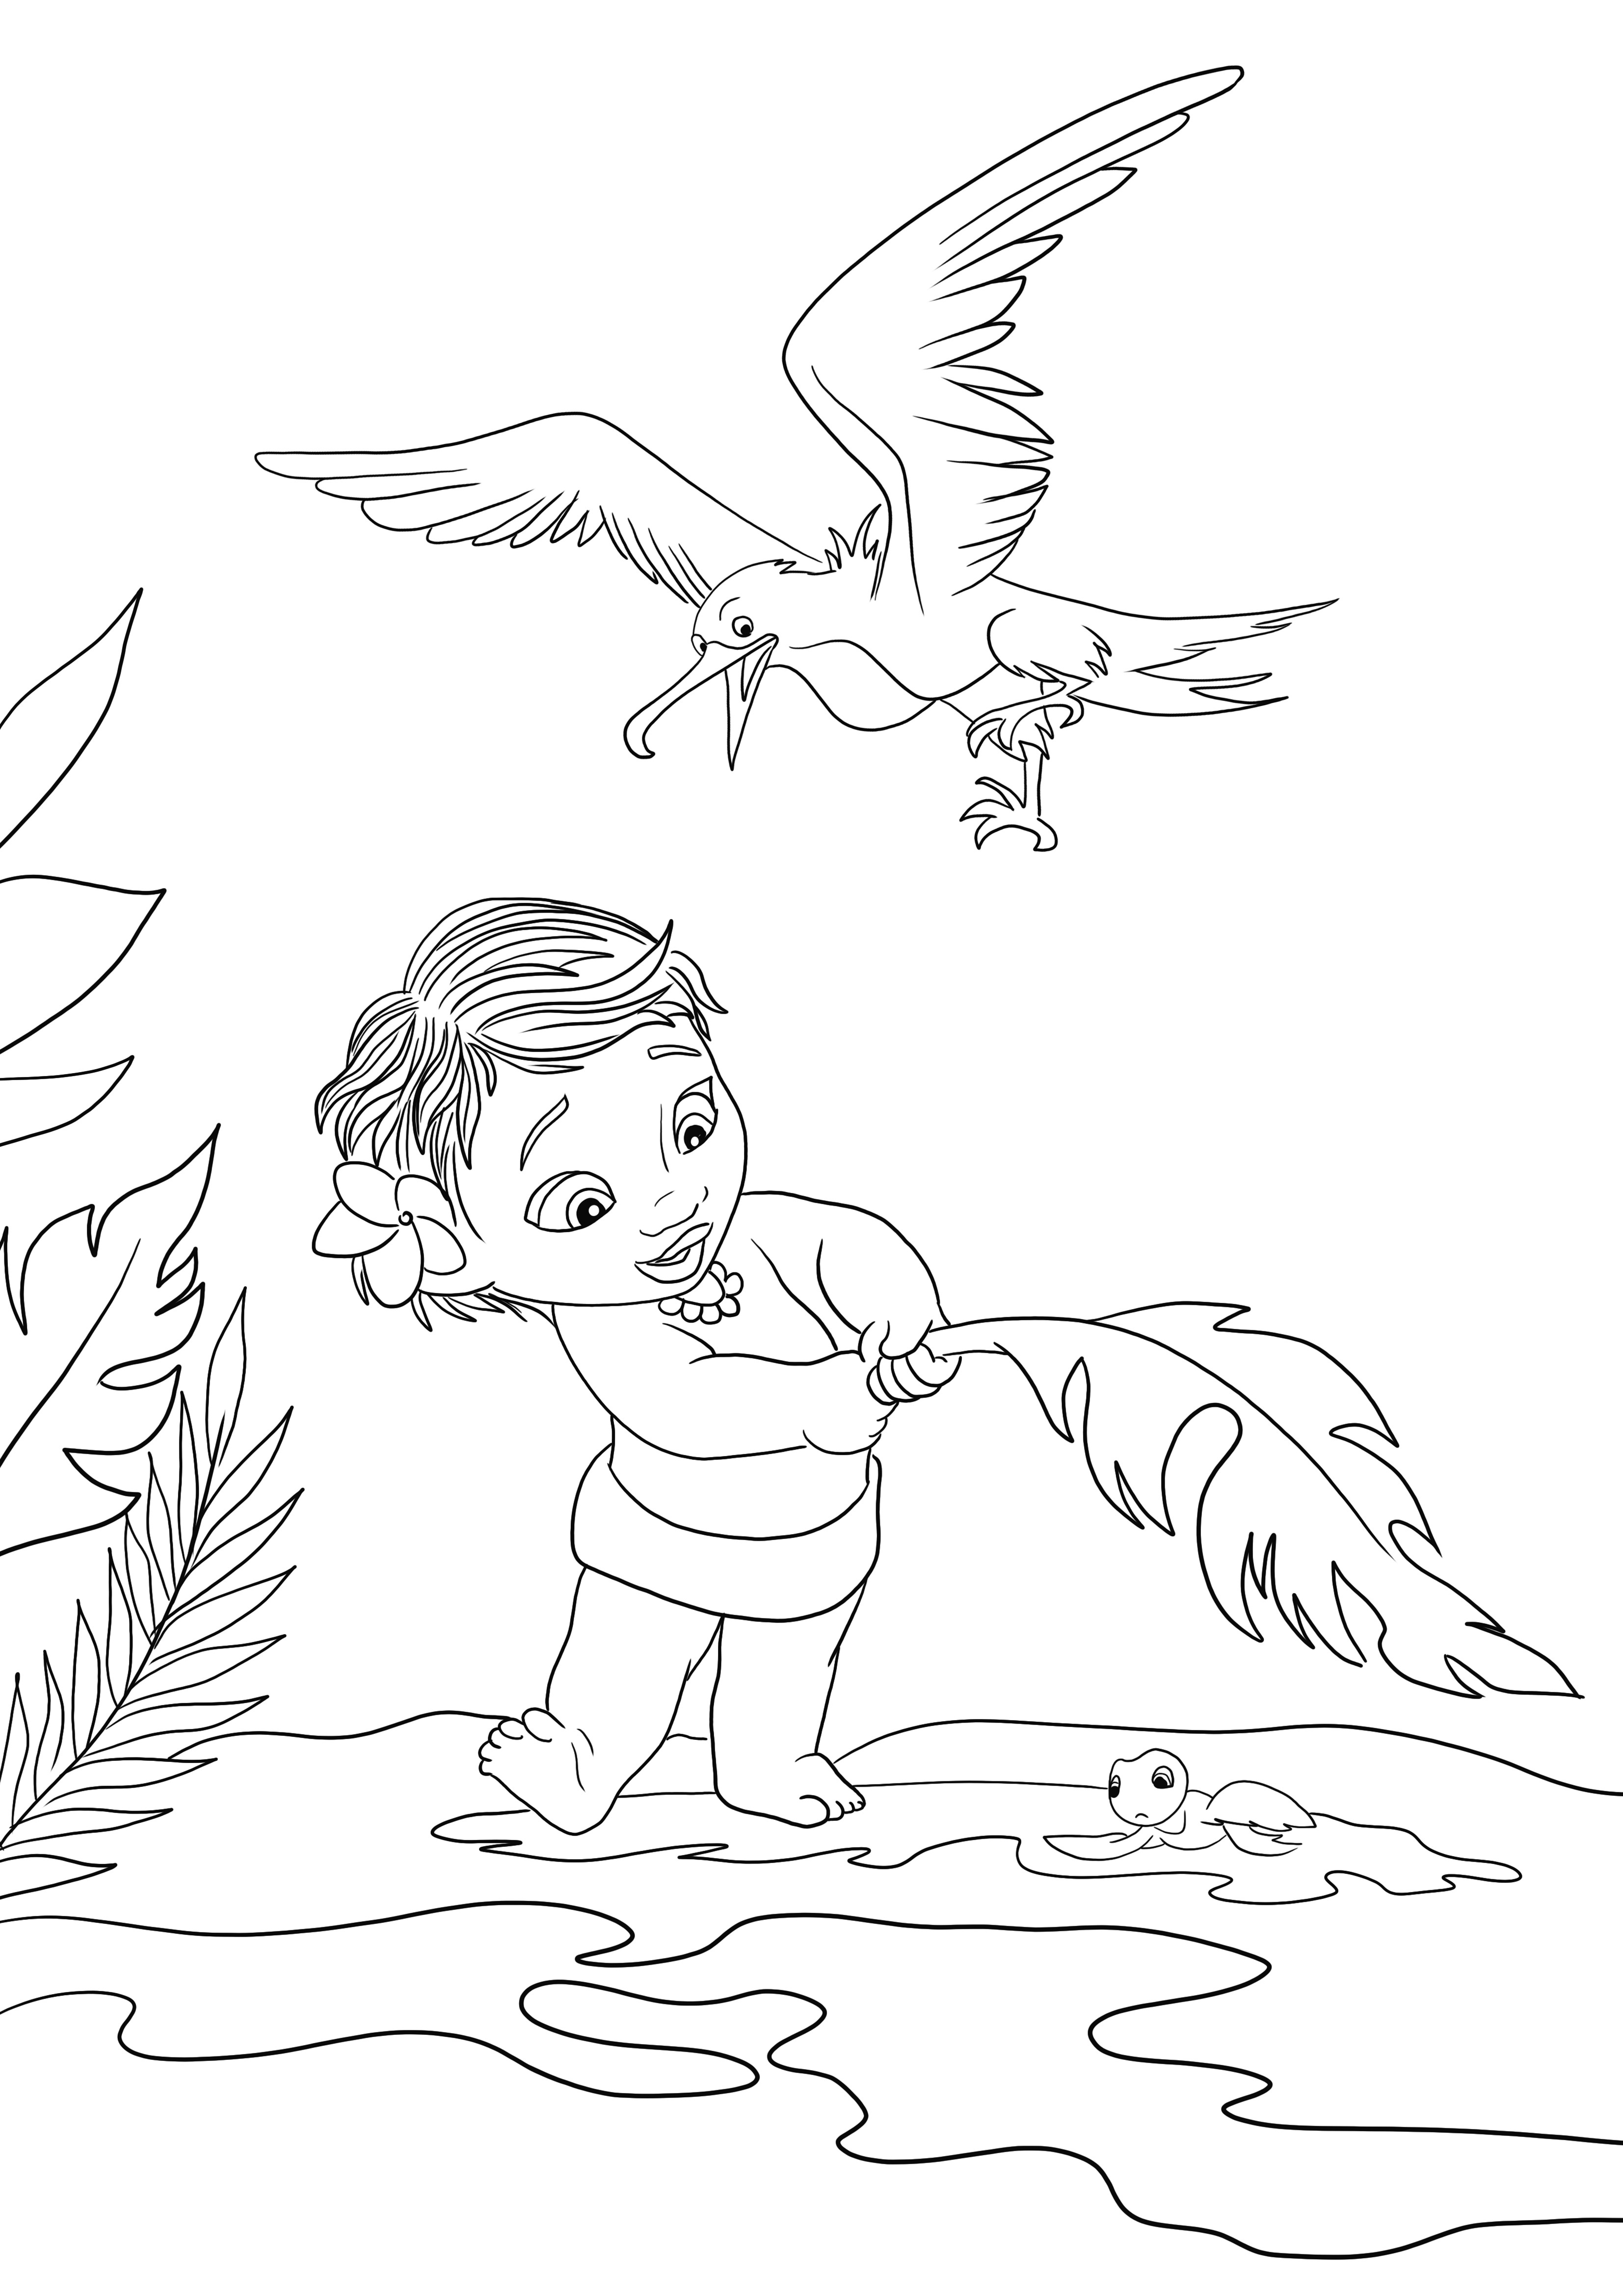 Halaman Little Moana and the Seagull yang dapat dicetak dan diwarnai gratis untuk diwarnai oleh anak-anak